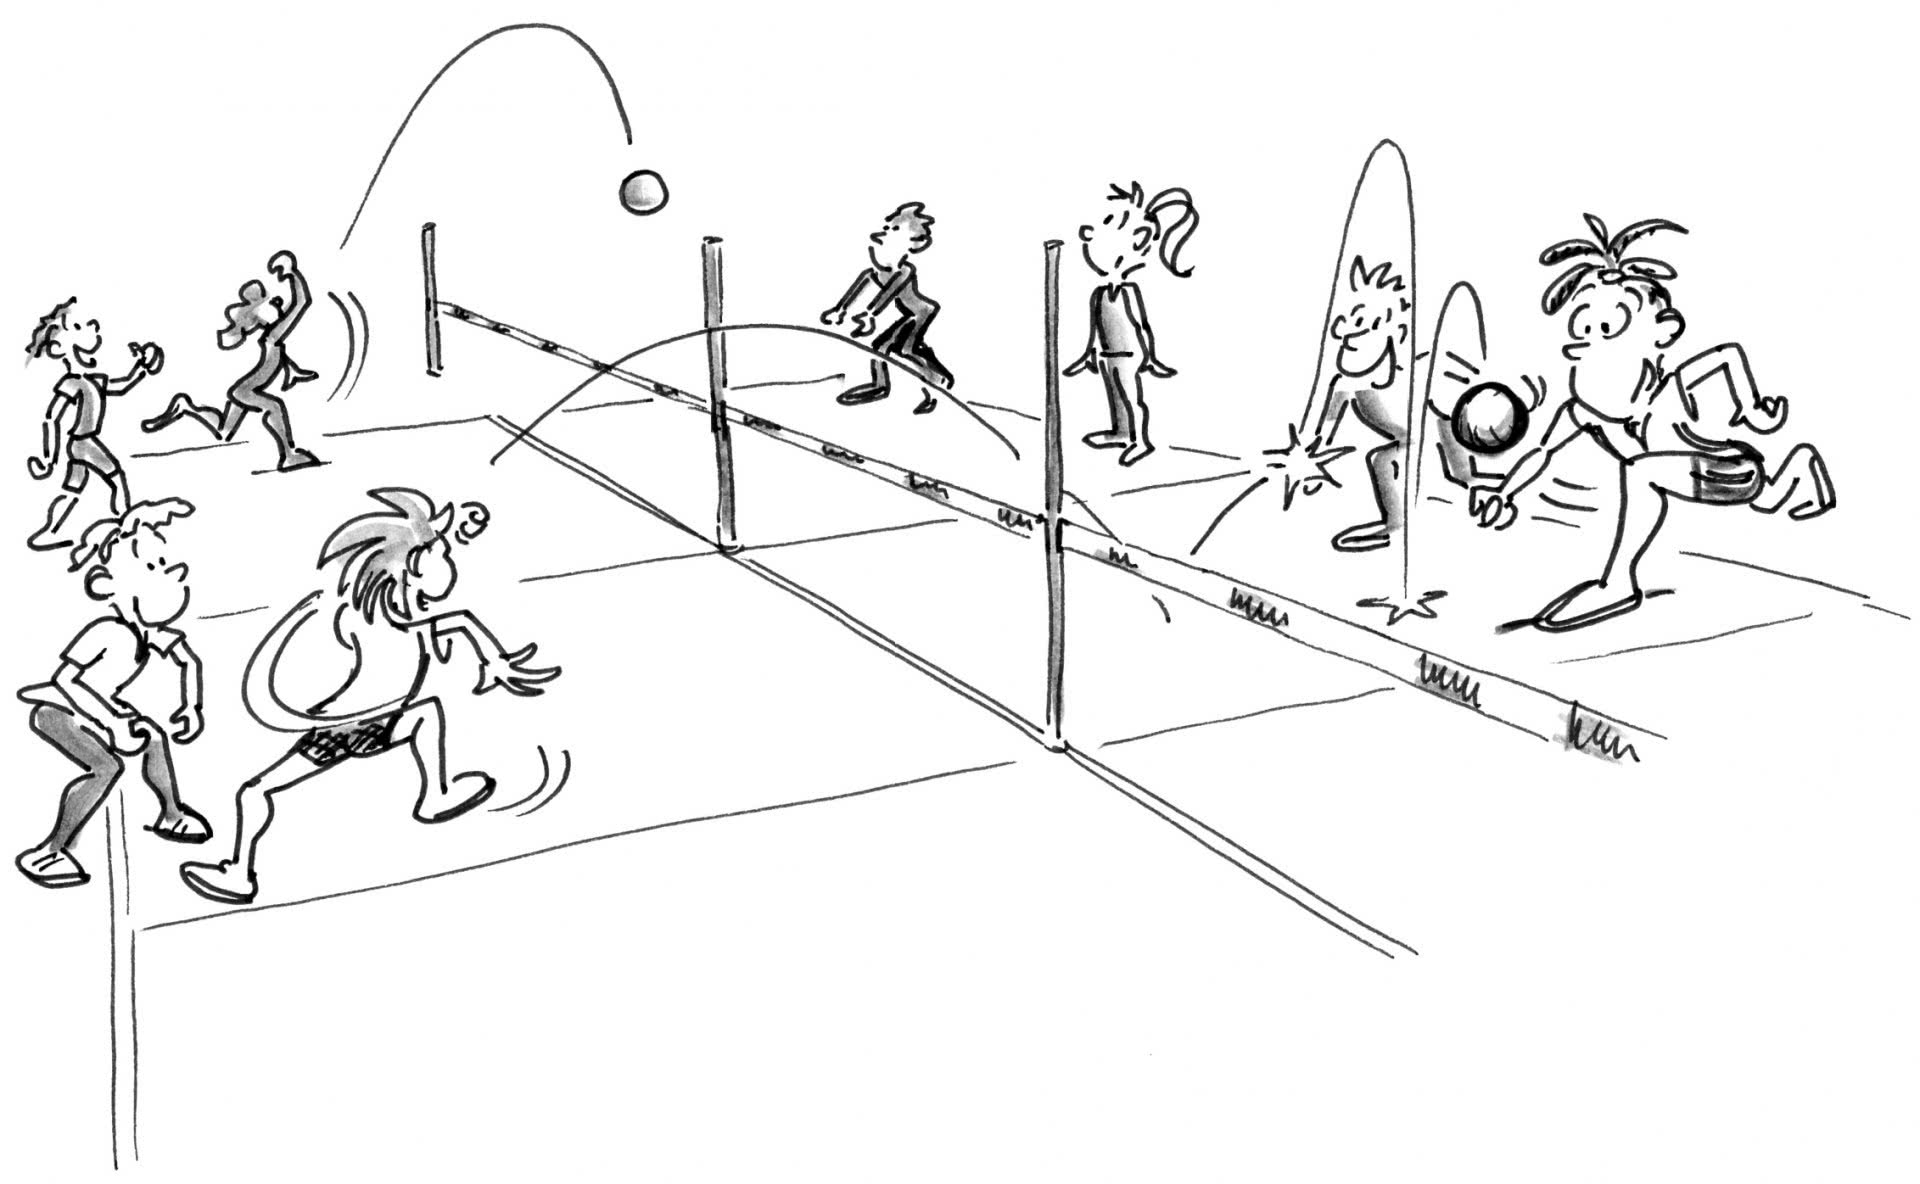 Comic: 2 Spielfelder mit Schülerinnen und Schülern, beim Fausballspiel zwei gegen zwei.